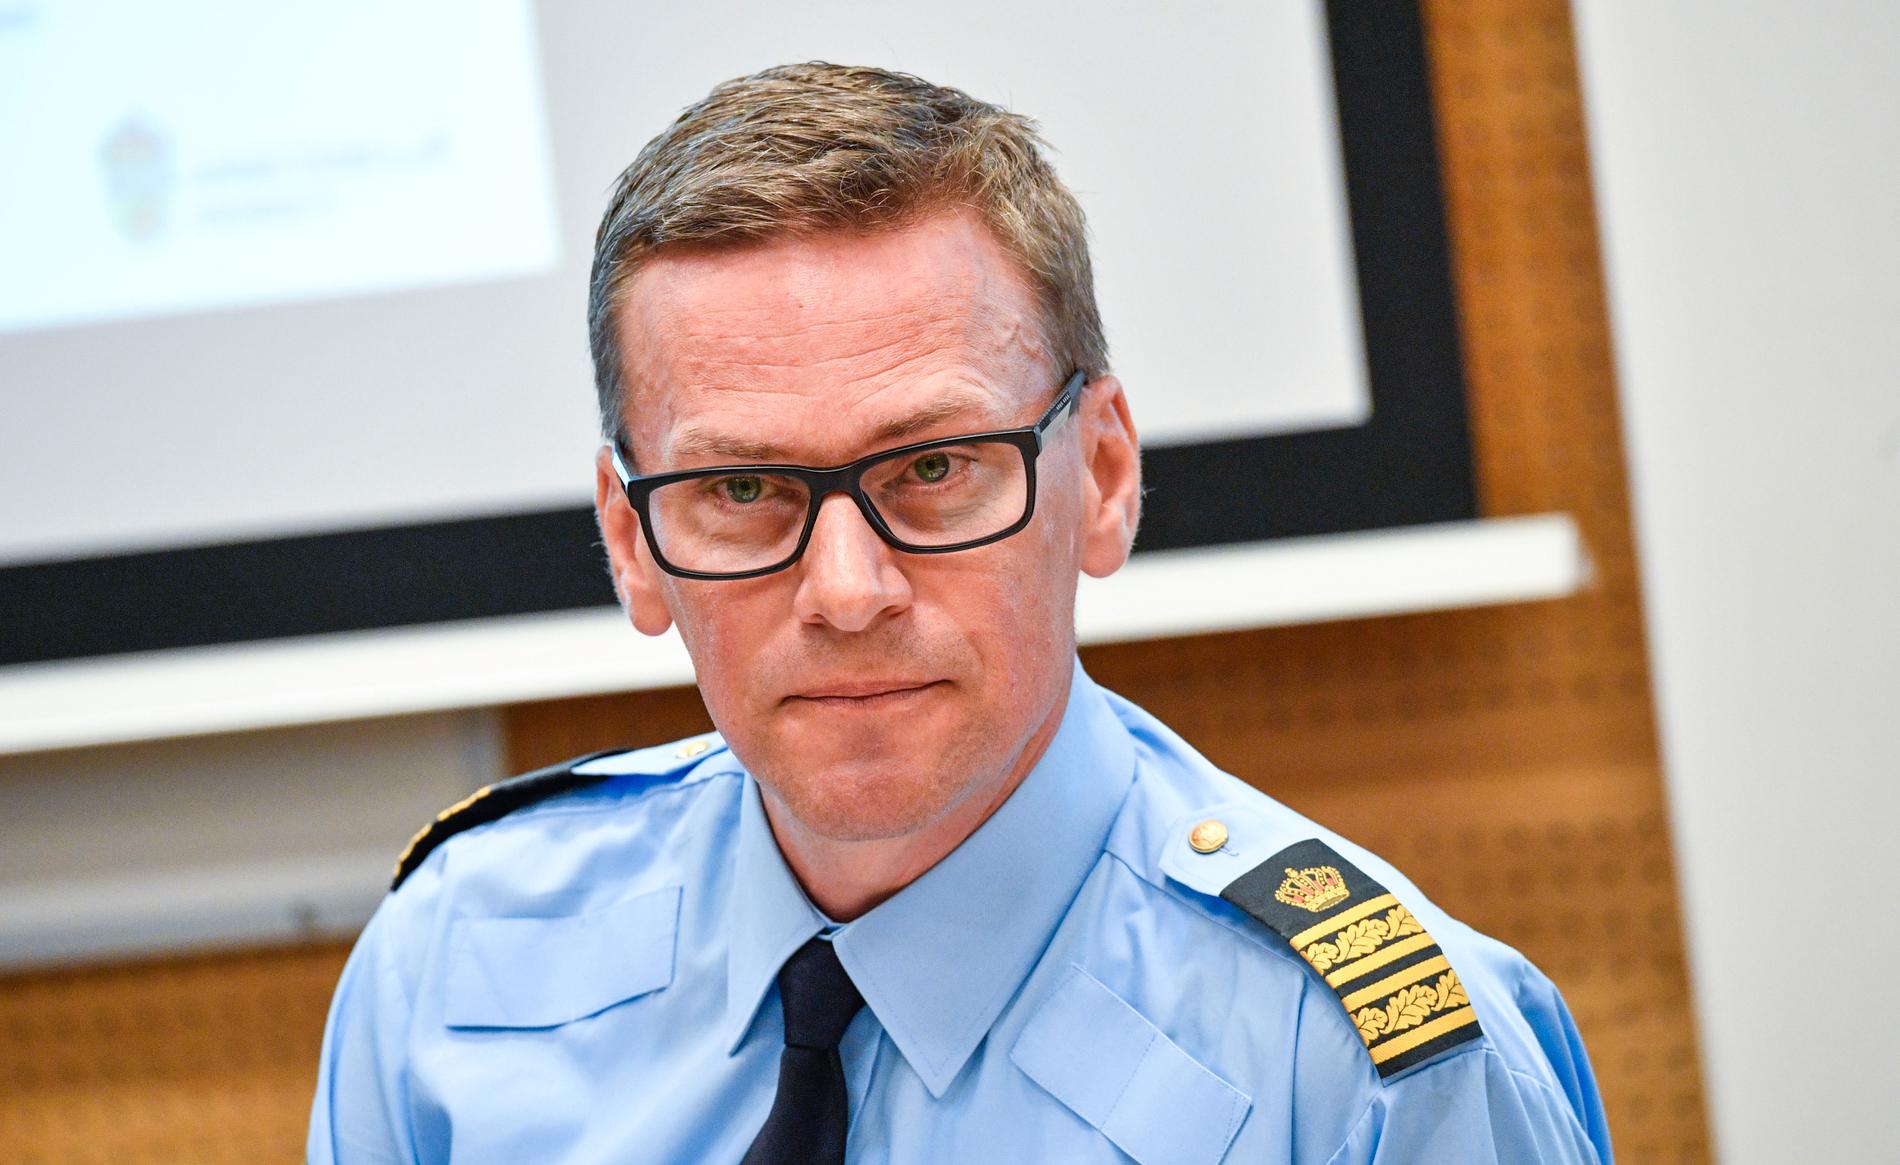 Genom arbetet mot grov organiserad brottslighet i södra Sverige kunde förra året drygt 94 miljoner kronor återföras till staten, berättar Mats Berggren, underrättelsechef vid polisen region Syd.